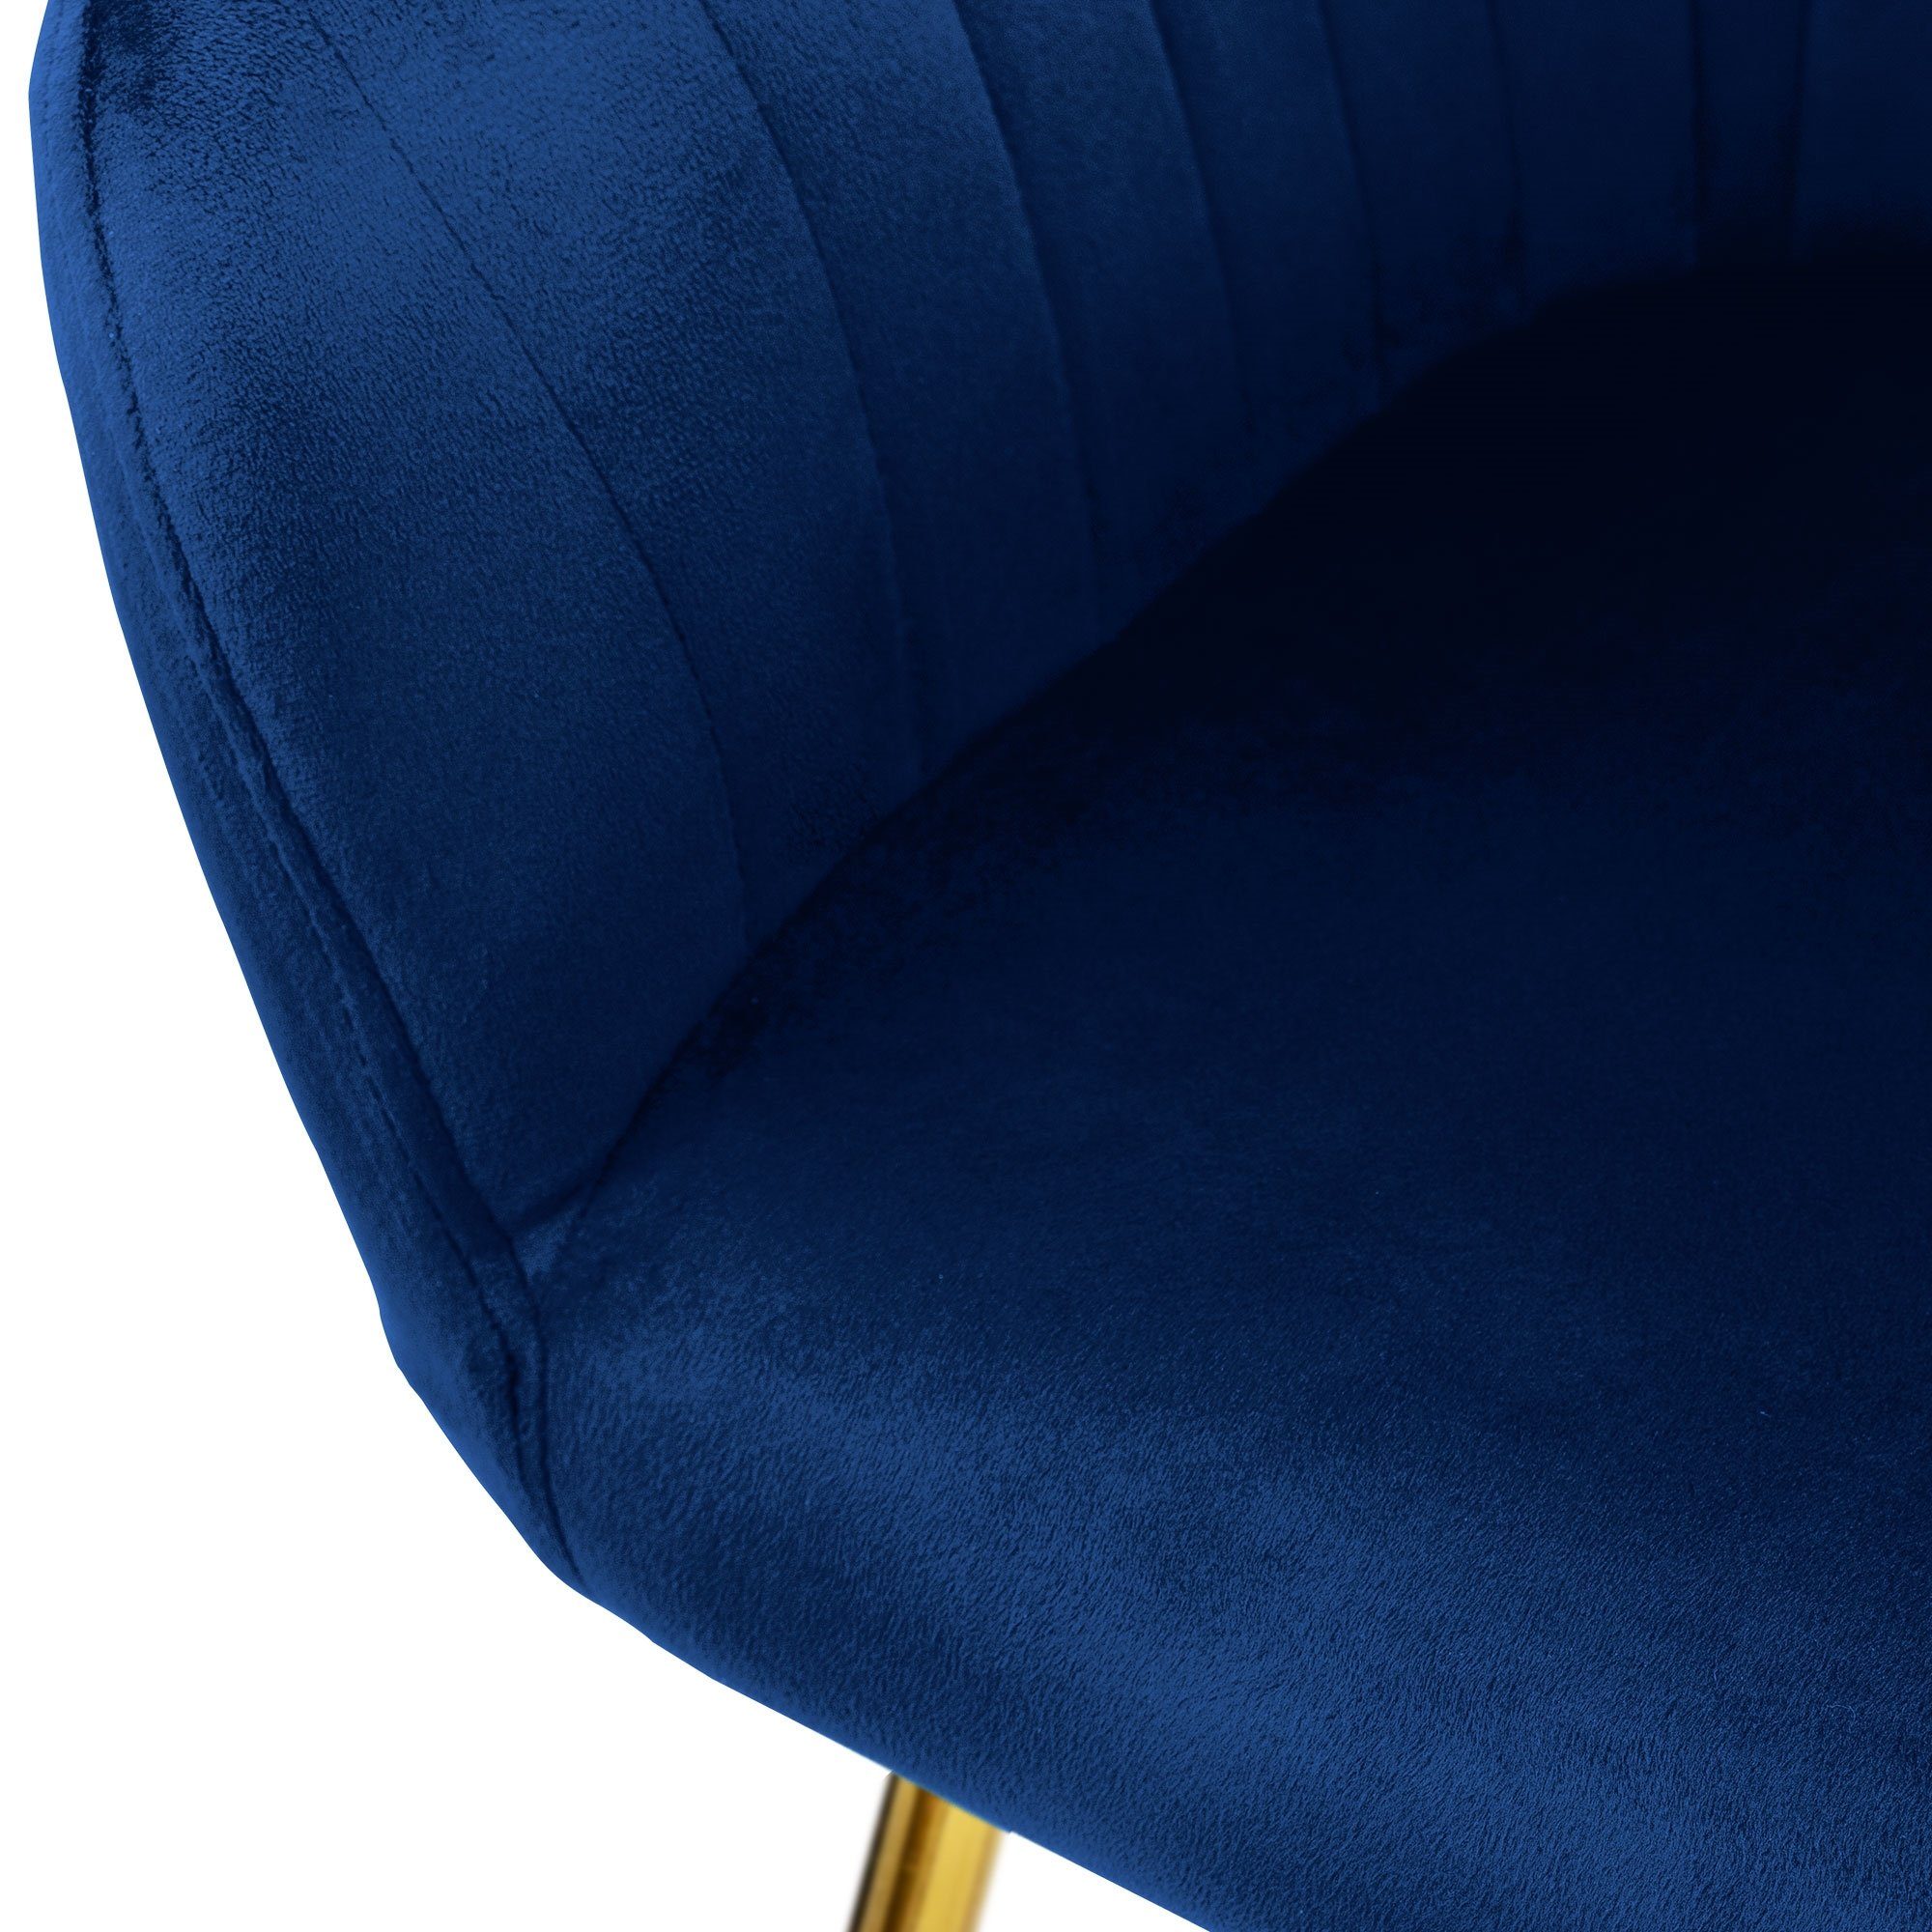 ML-DESIGN Stuhl Küchenstühle Polsterstühle 4er Blau Samtbezug ergonomisch Wohnzimmerstühle, Set Metallbeine